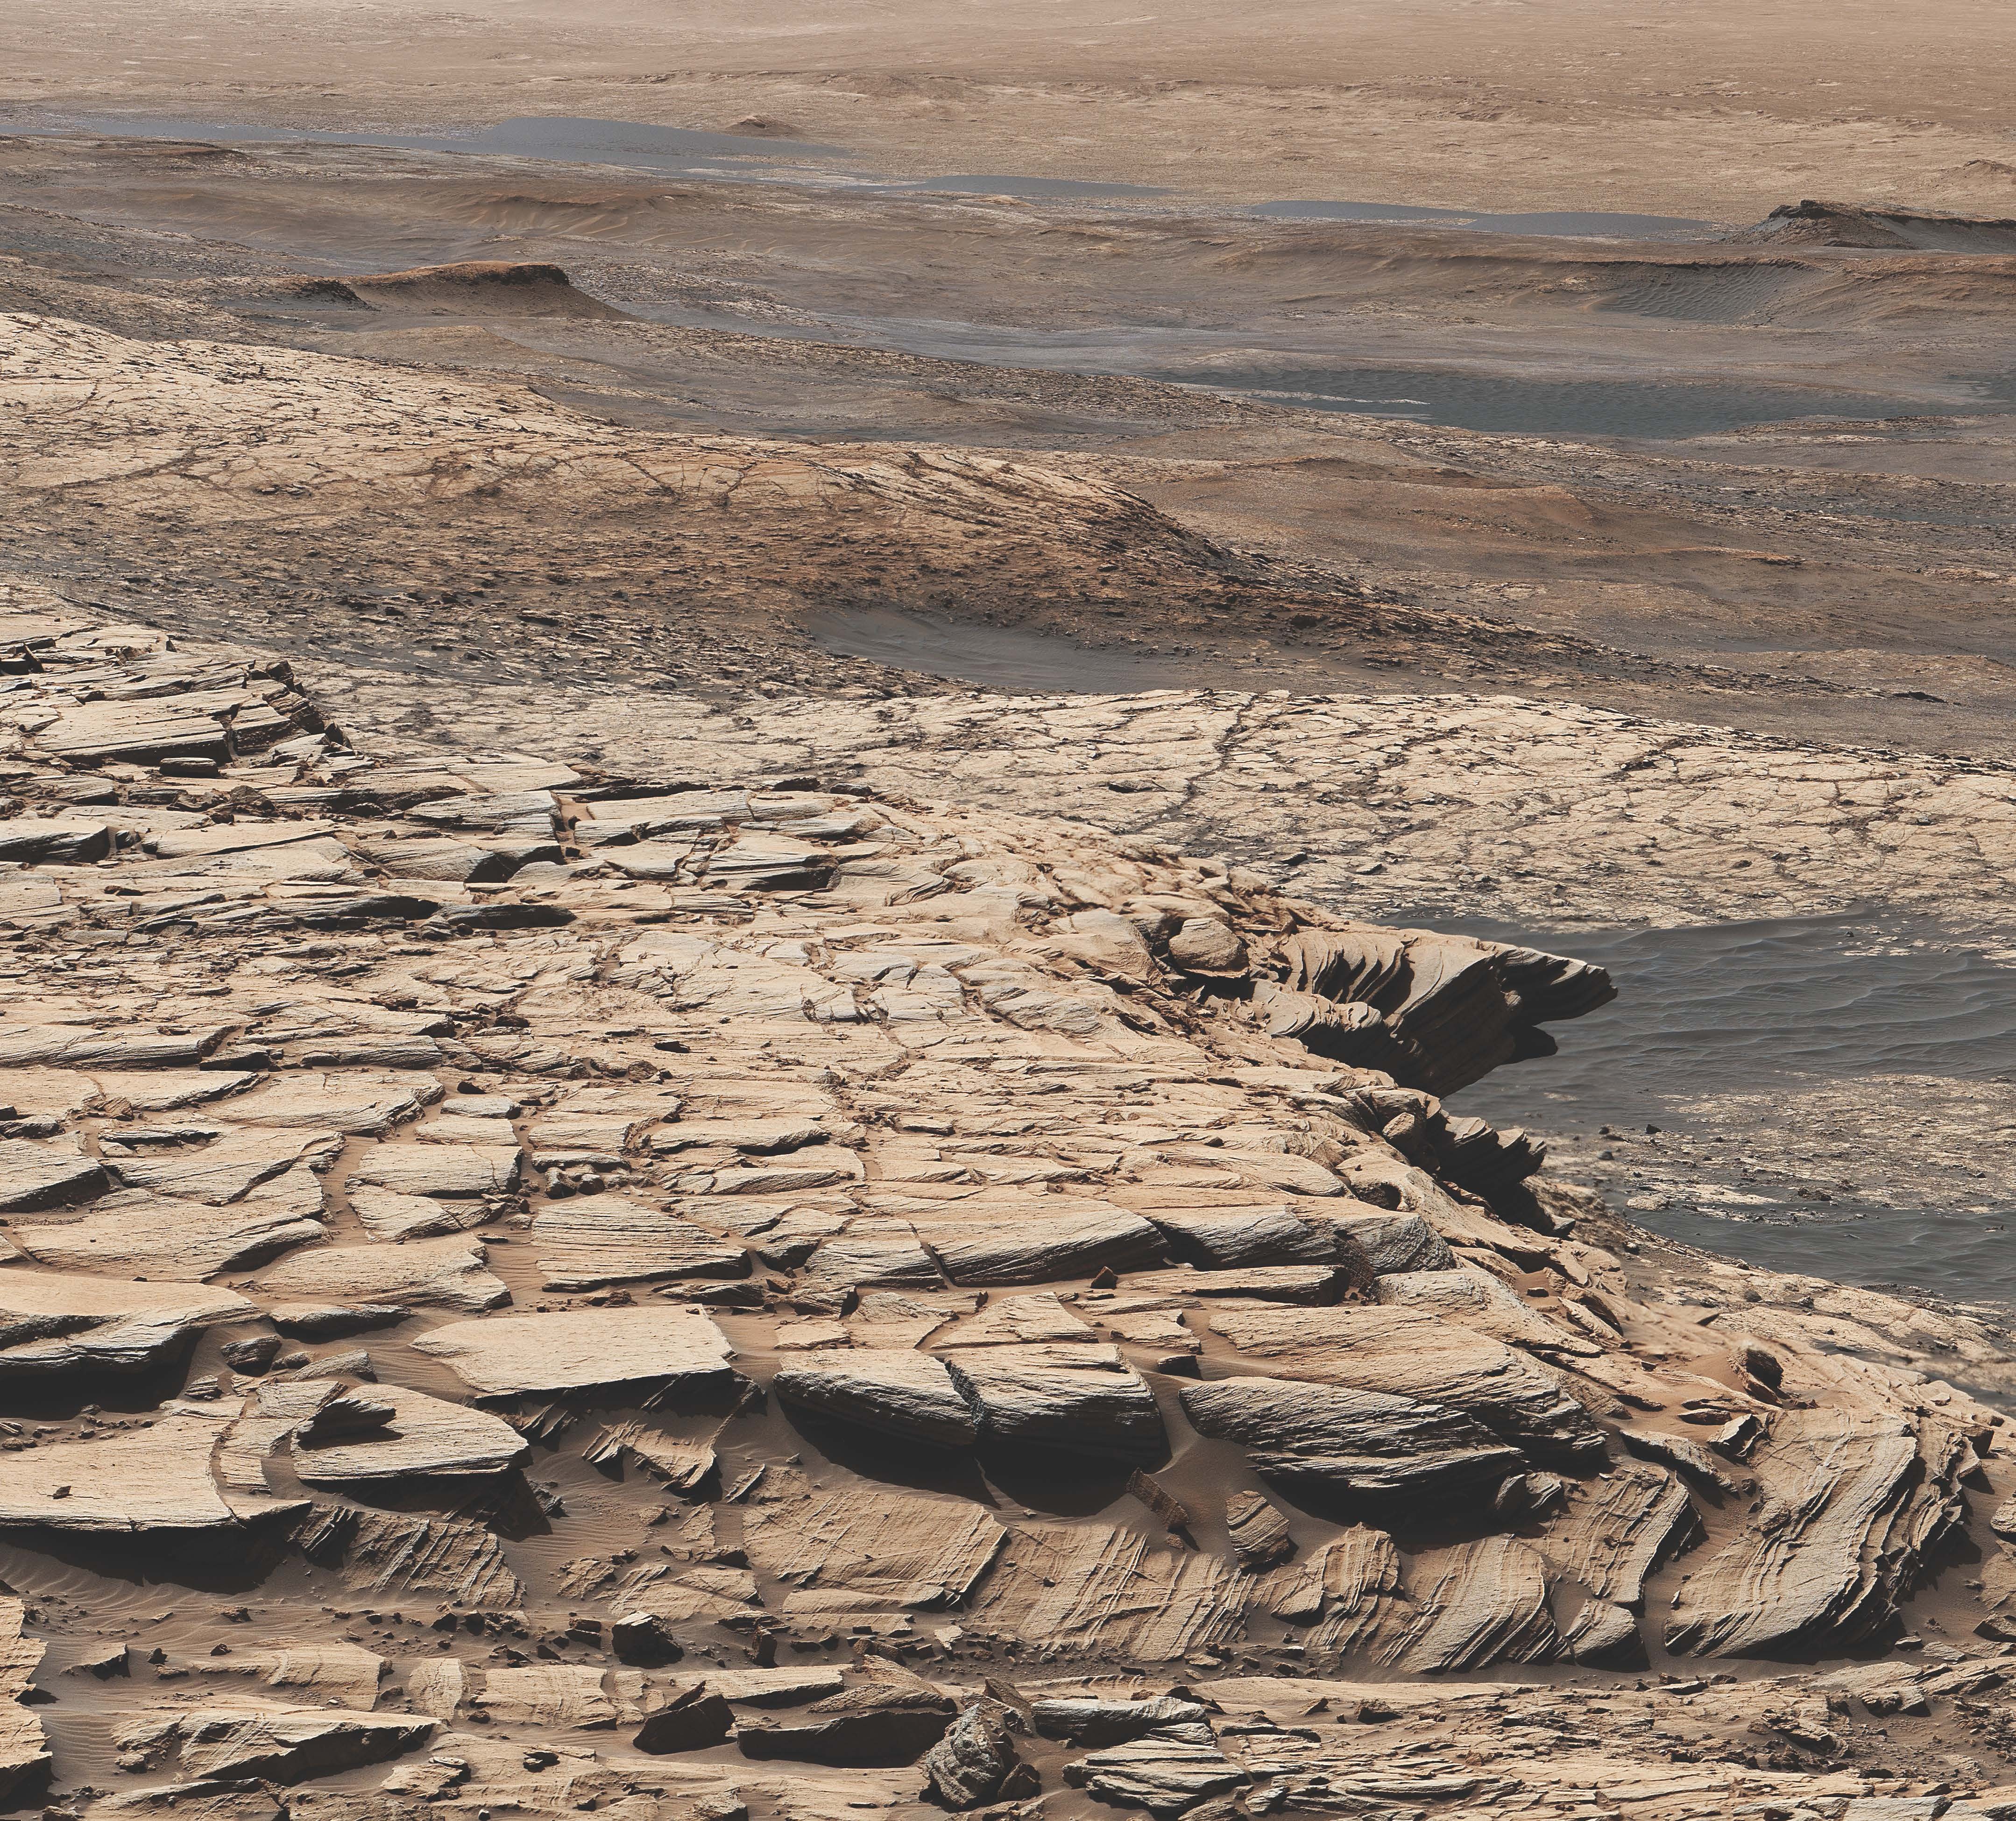 Dieses Mosaik wurde aus Bildern erstellt, die von der MAST-Kamera an Bord der NASA-Raumsonde Curiosity am Marstag 2729 oder dem ersten Tag der Mission aufgenommen wurden.  Landschaft zeigt die Stimson-Sandsteinformationen im Krater Gale.  An diesem allgemeinen Standort hat Curiosity das Edinburgh-Bohrloch gebohrt, von dem eine Probe mit Kohlenstoff 12 angereichert war.